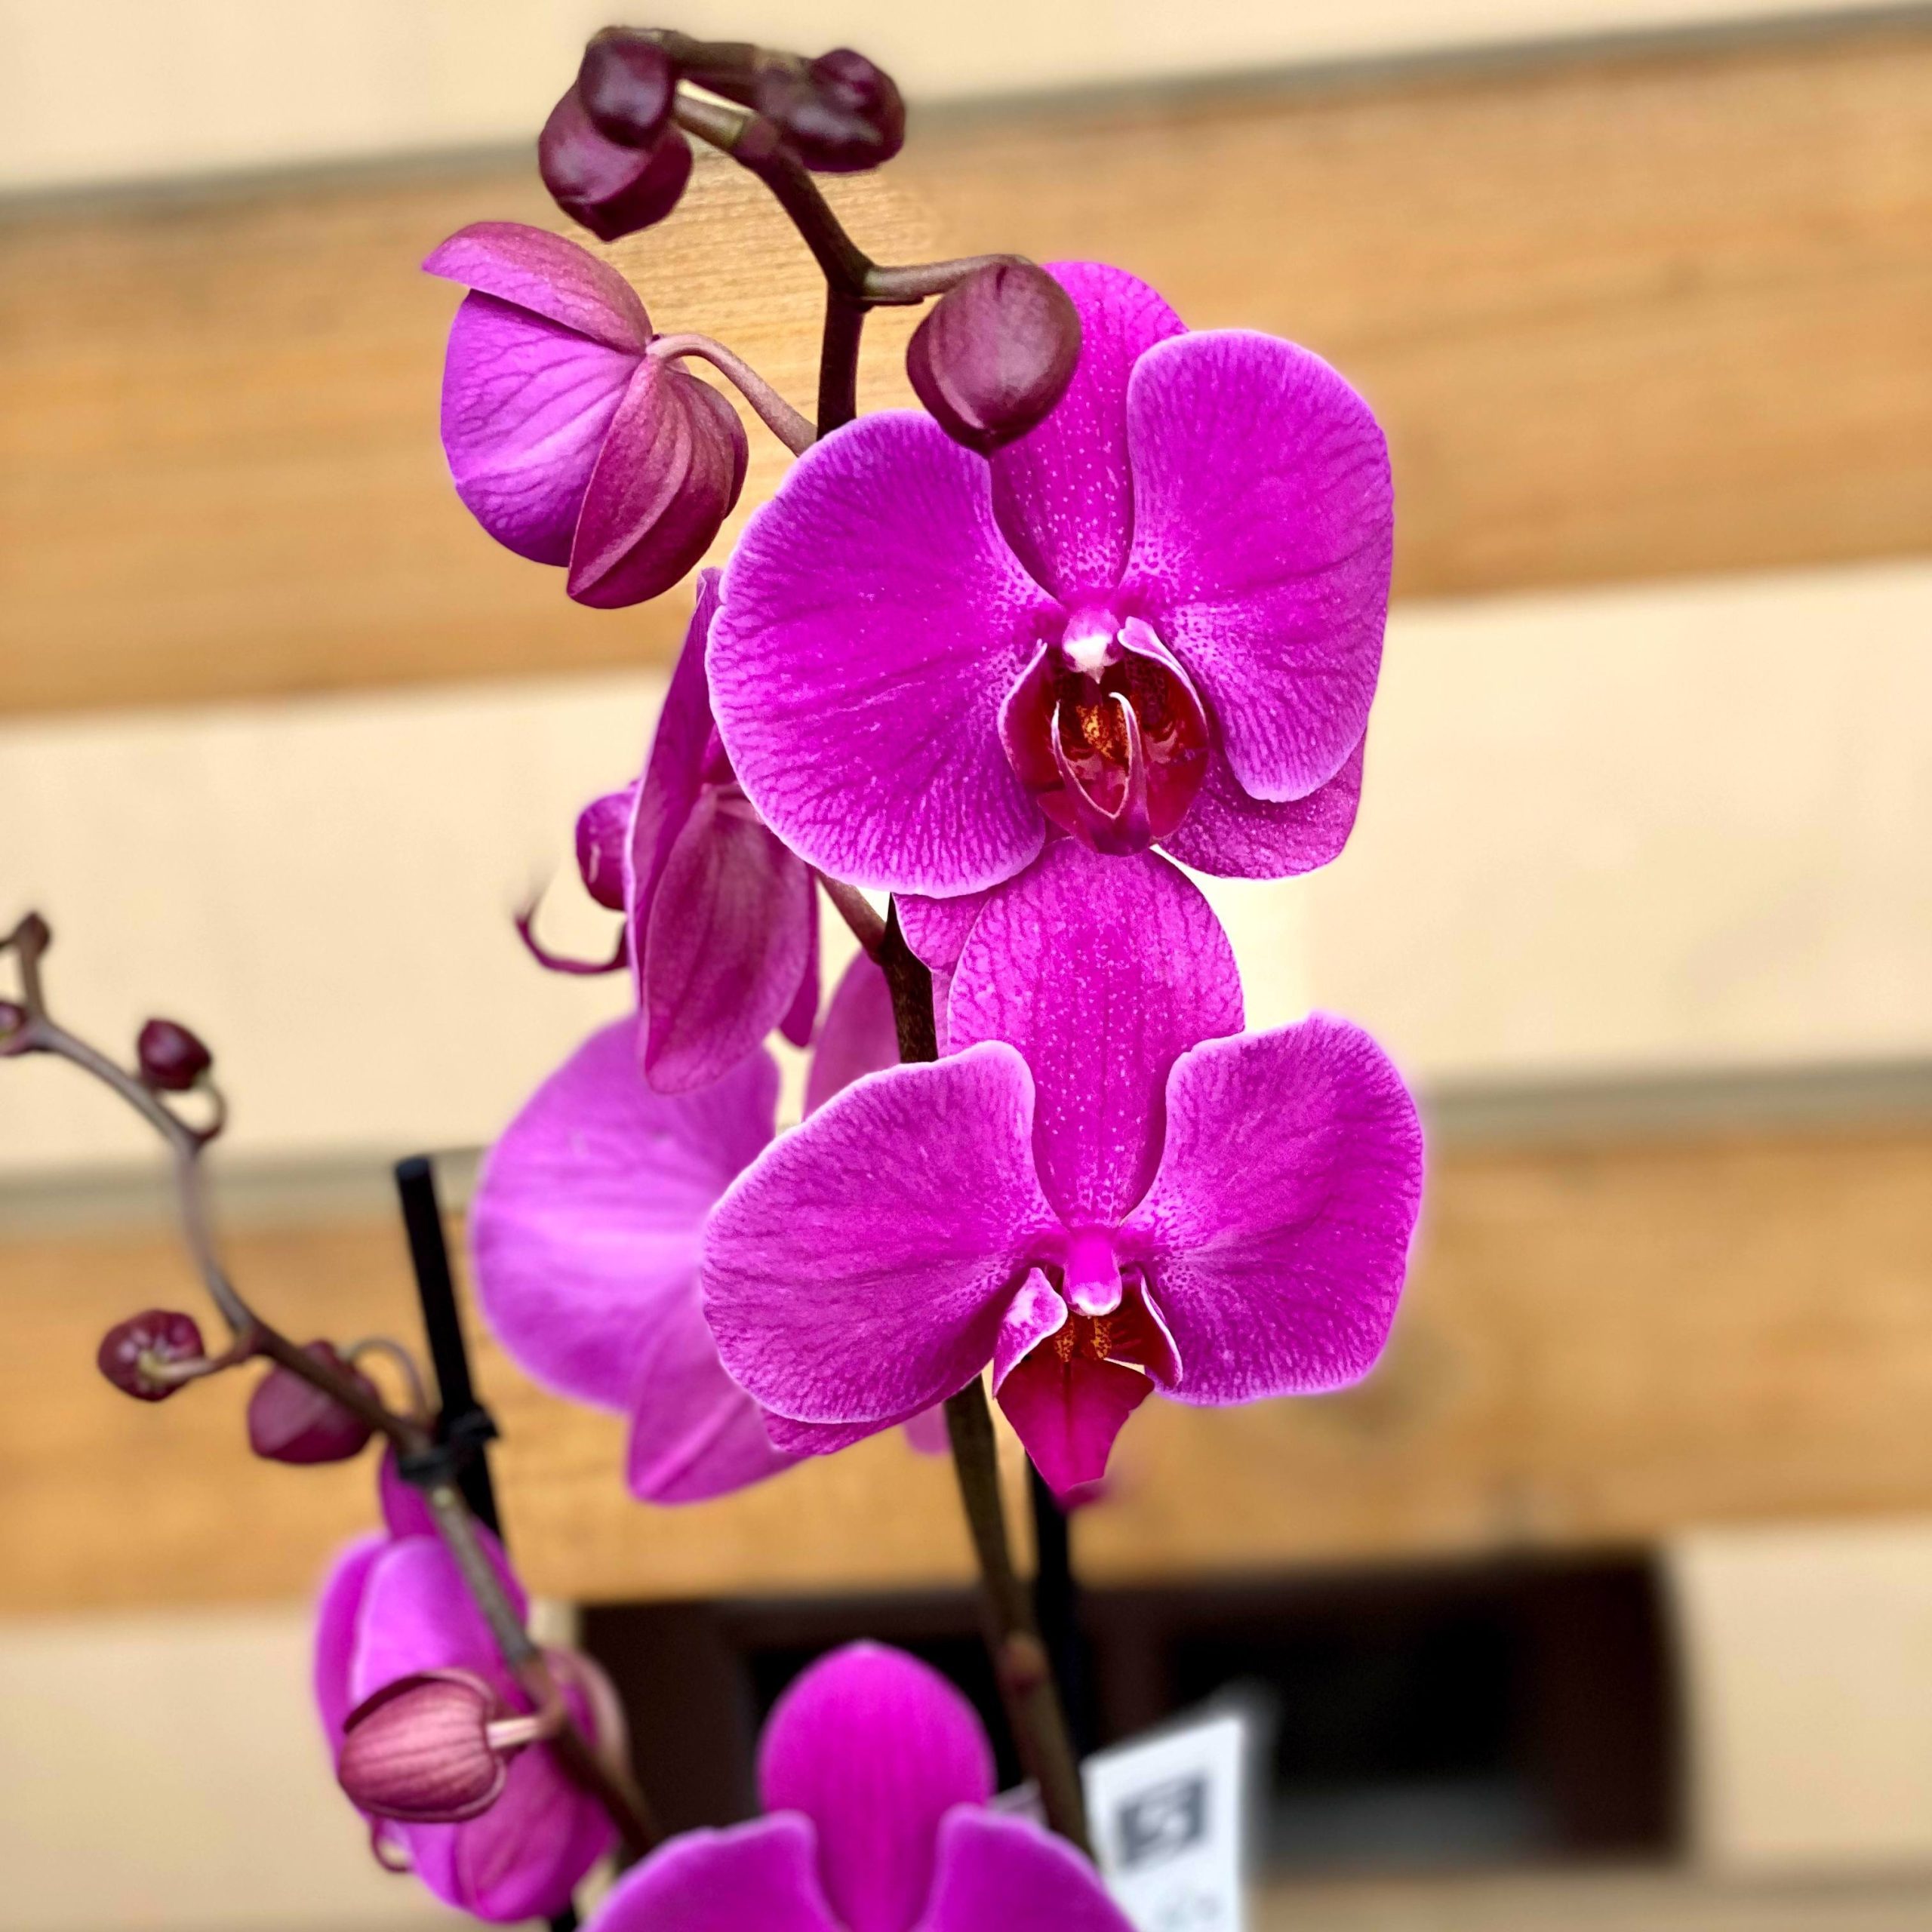 Райские цветы: орхидеи в изображениях